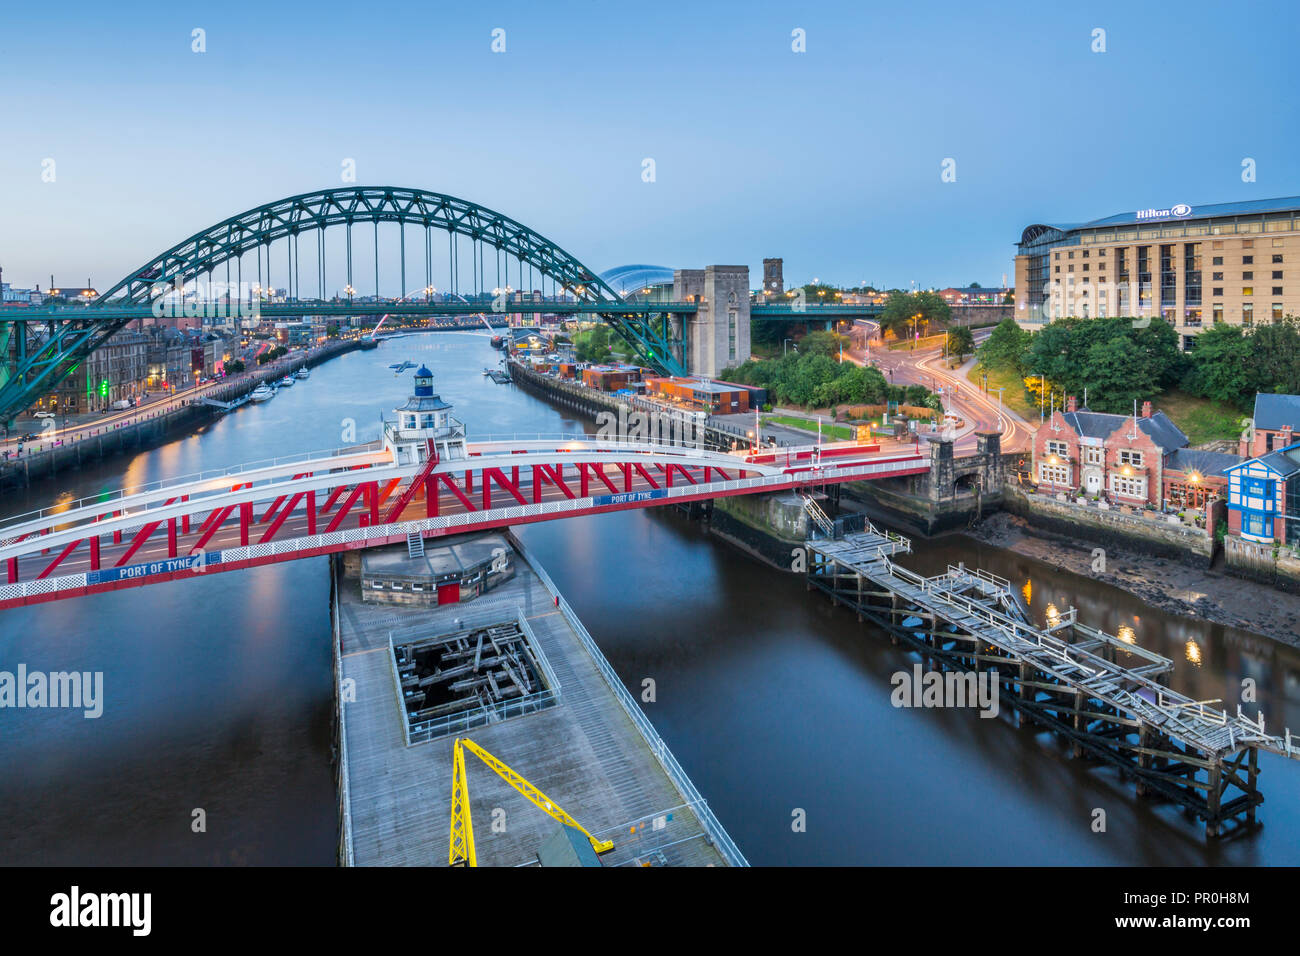 Vue sur le Tyne Bridge, pont tournant, et à la tombée de la rivière Tyne, Newcastle-upon-Tyne, Tyne et Wear, Angleterre, Royaume-Uni, Europe Banque D'Images